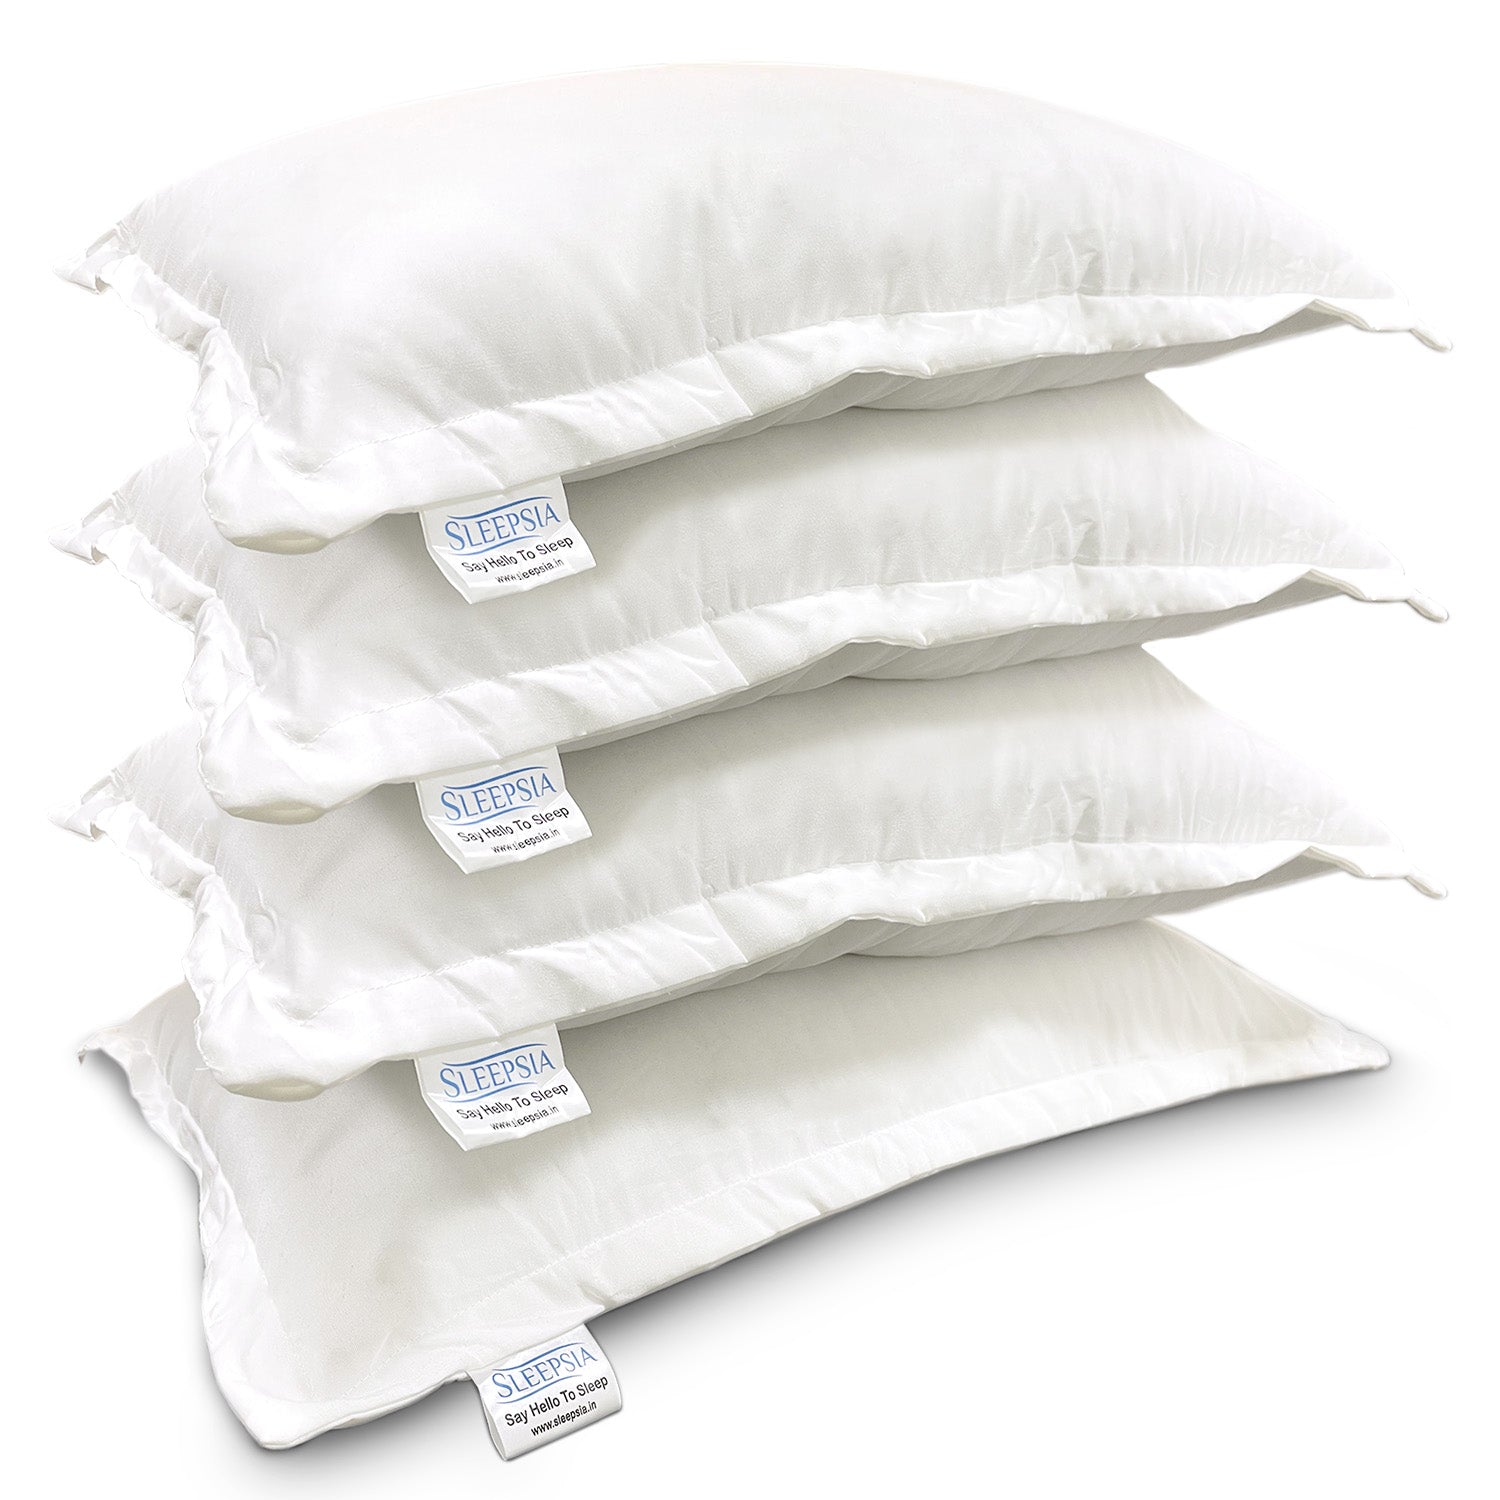 Super-Soft & Fluffy Microfiber Sleeping Pillow (Hotel Pillow)